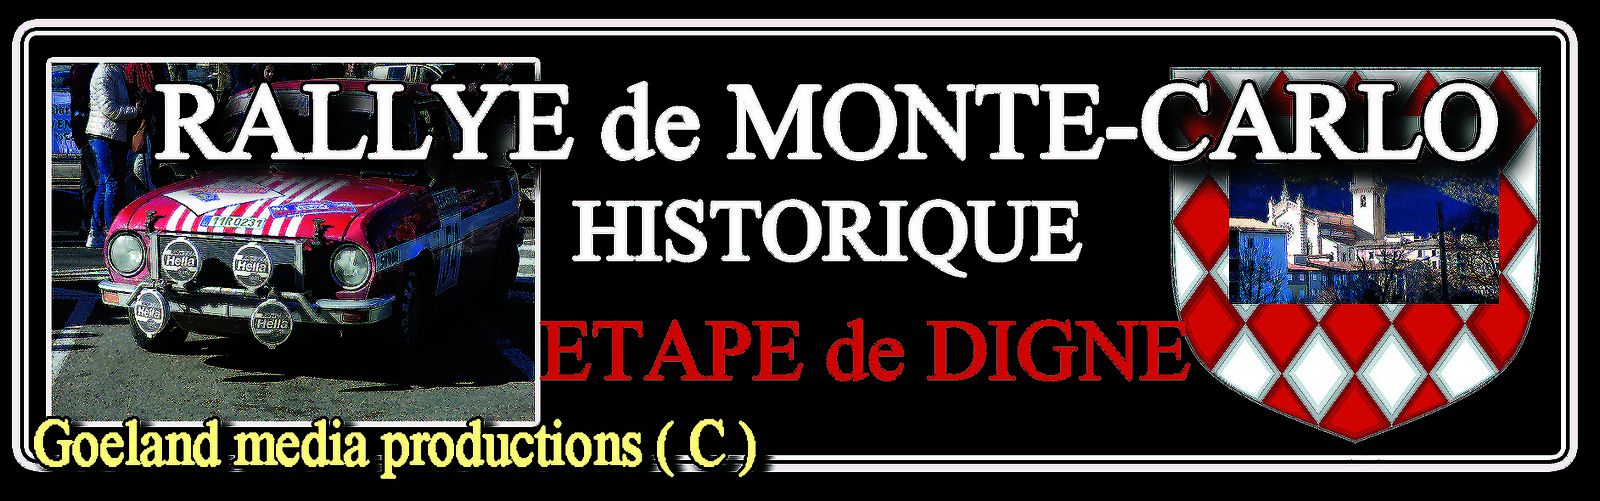 RALLYE MONTE-CARLO Historique -  goelandmedia.prod@gmail.com (C) - étape de Digne-les-bains